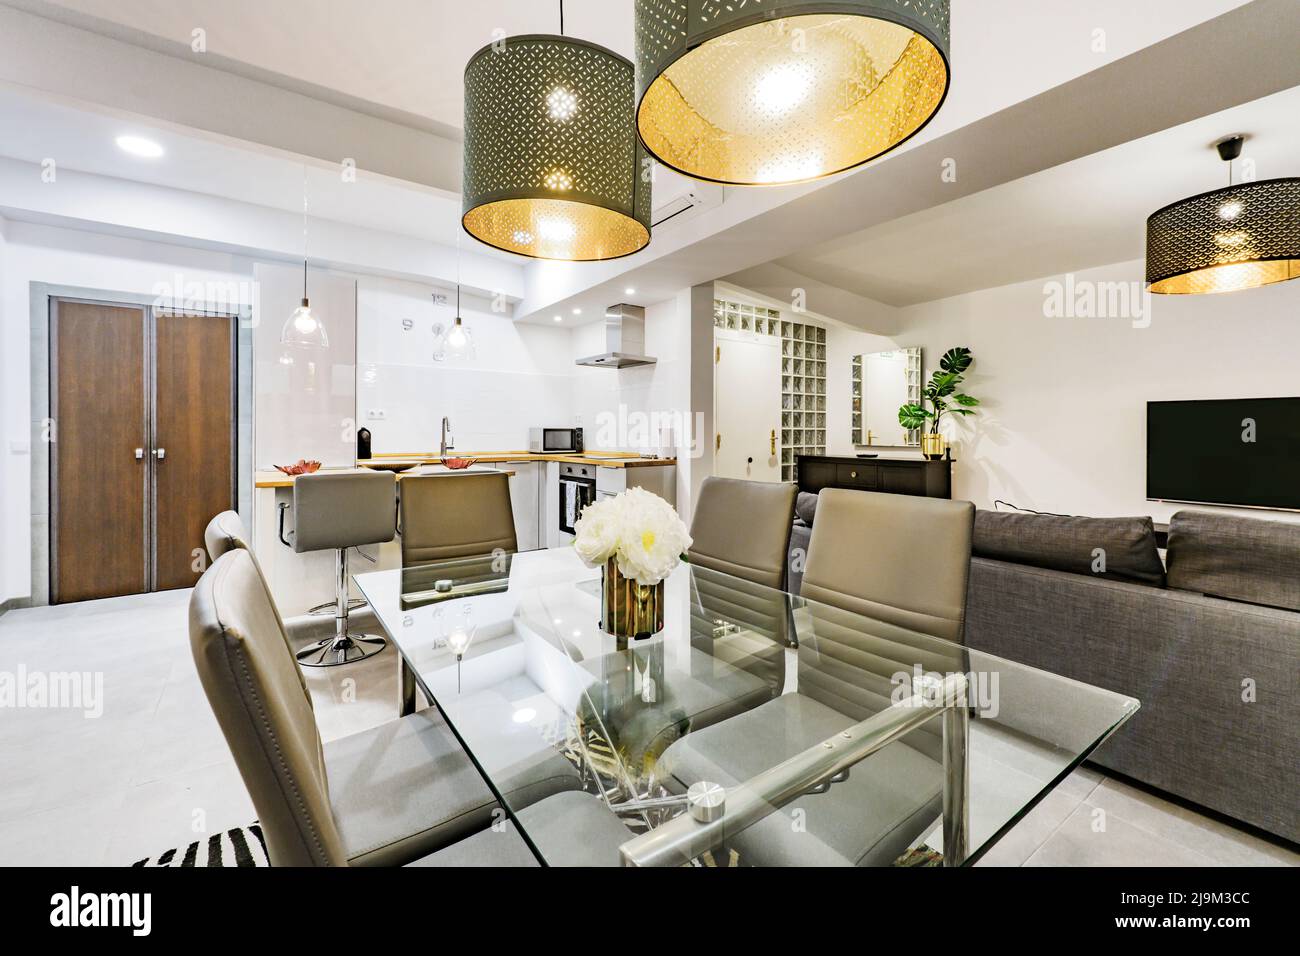 Design-Apartment-Wohnzimmer mit Esstisch aus Glas, grauen Ledersesseln und dekorativen Lampen Stockfoto